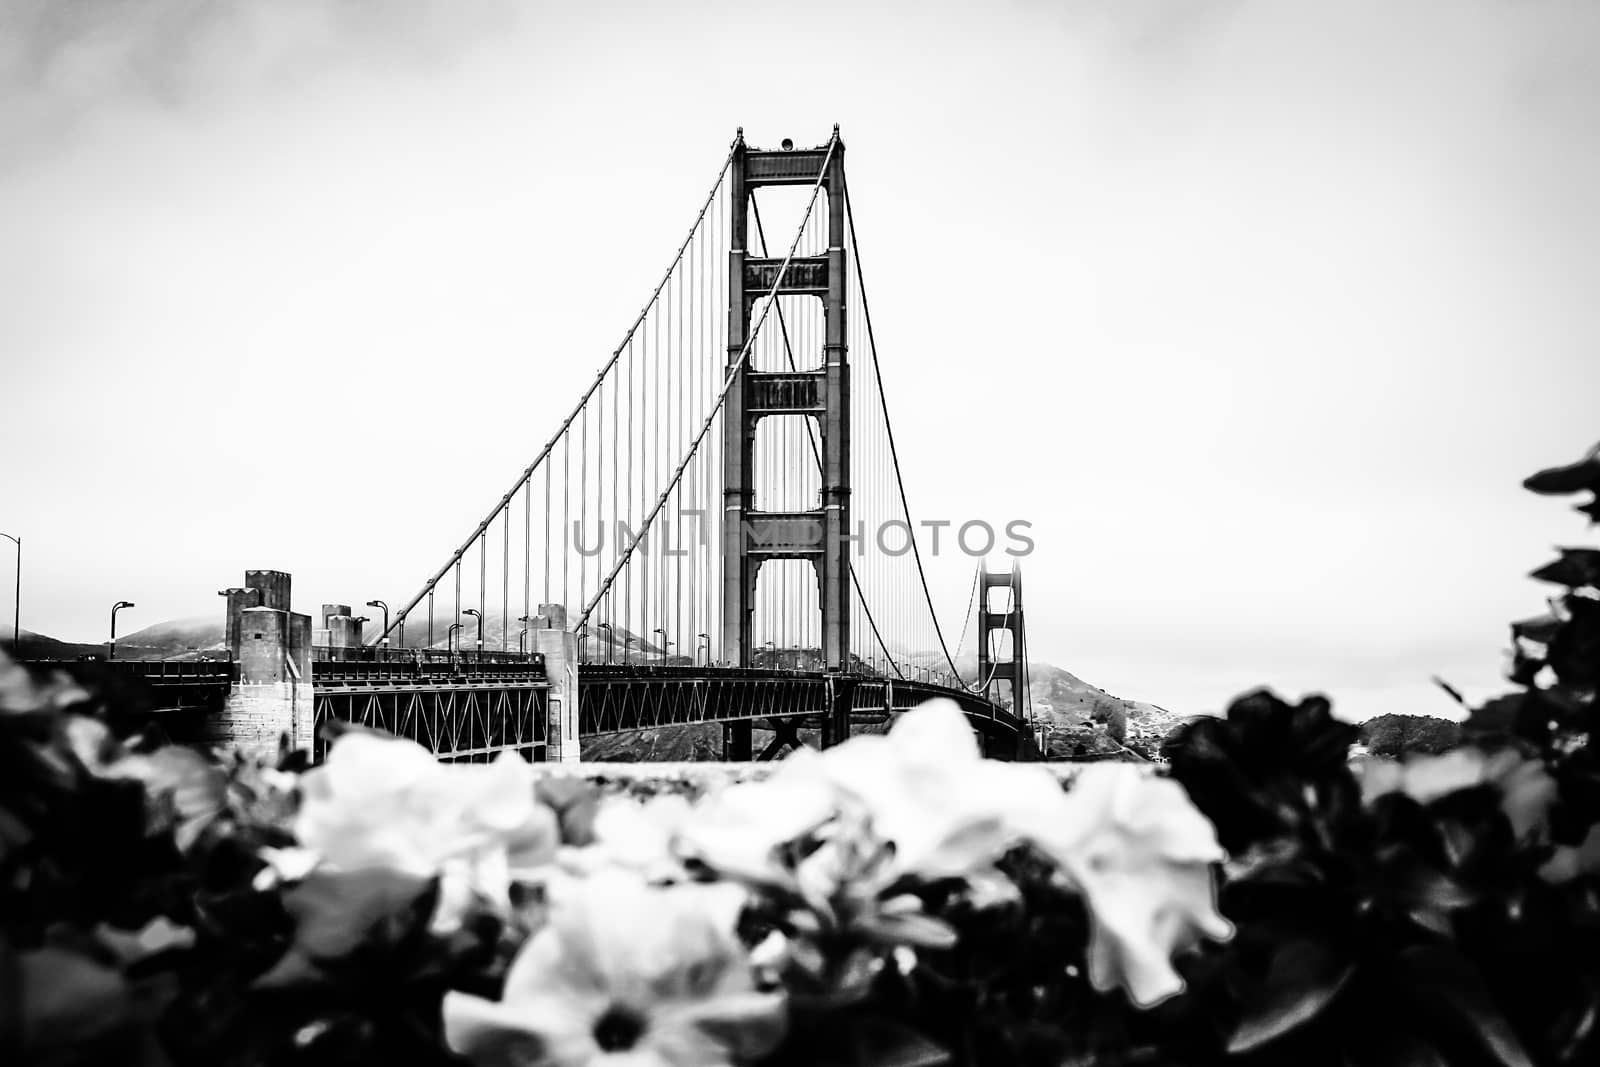 Golden Gate Bridge in winter by Timmi